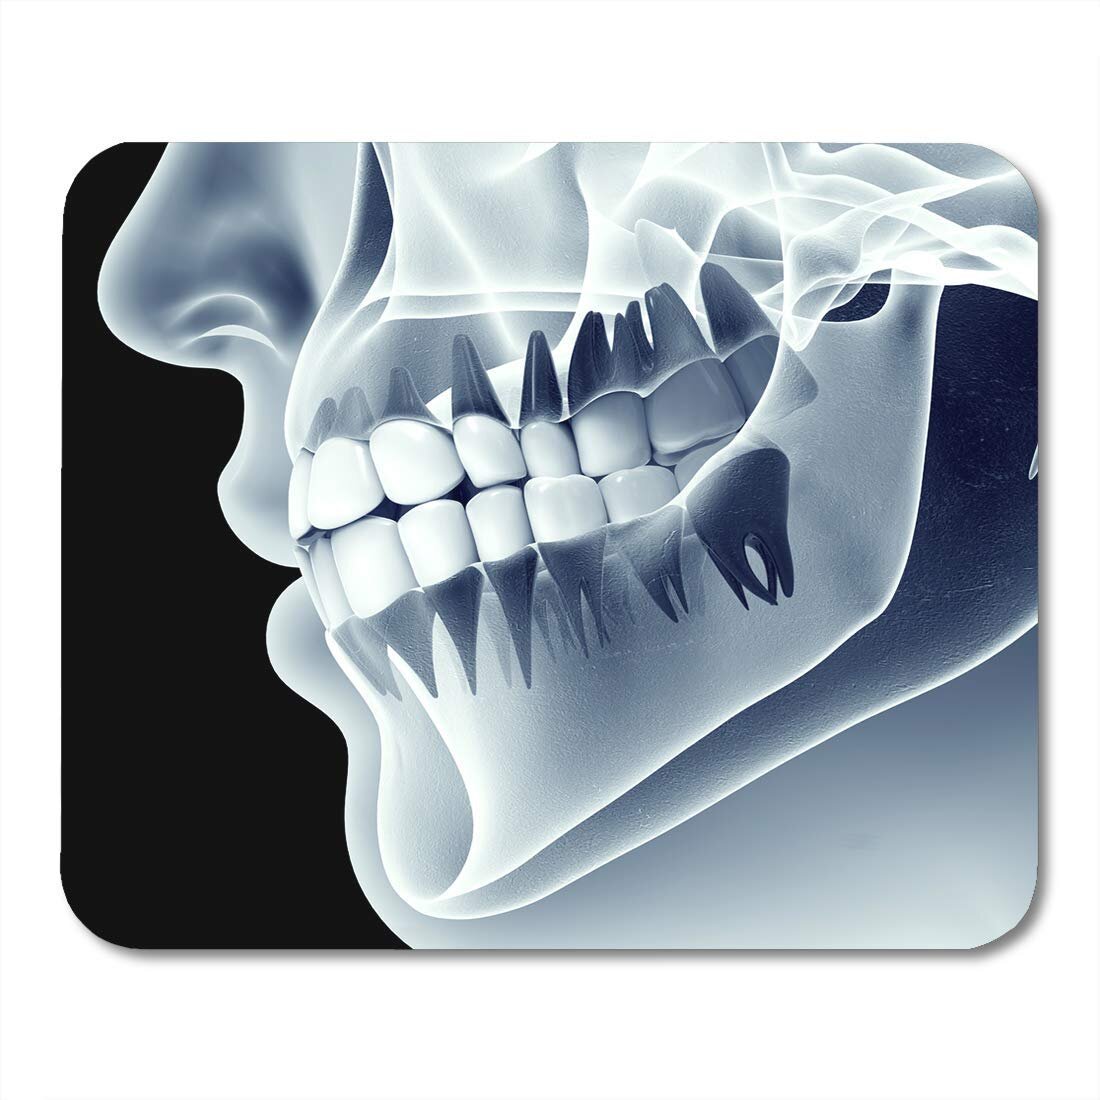 Зачем стоматологи просят переделать заново рентгеновские снимки